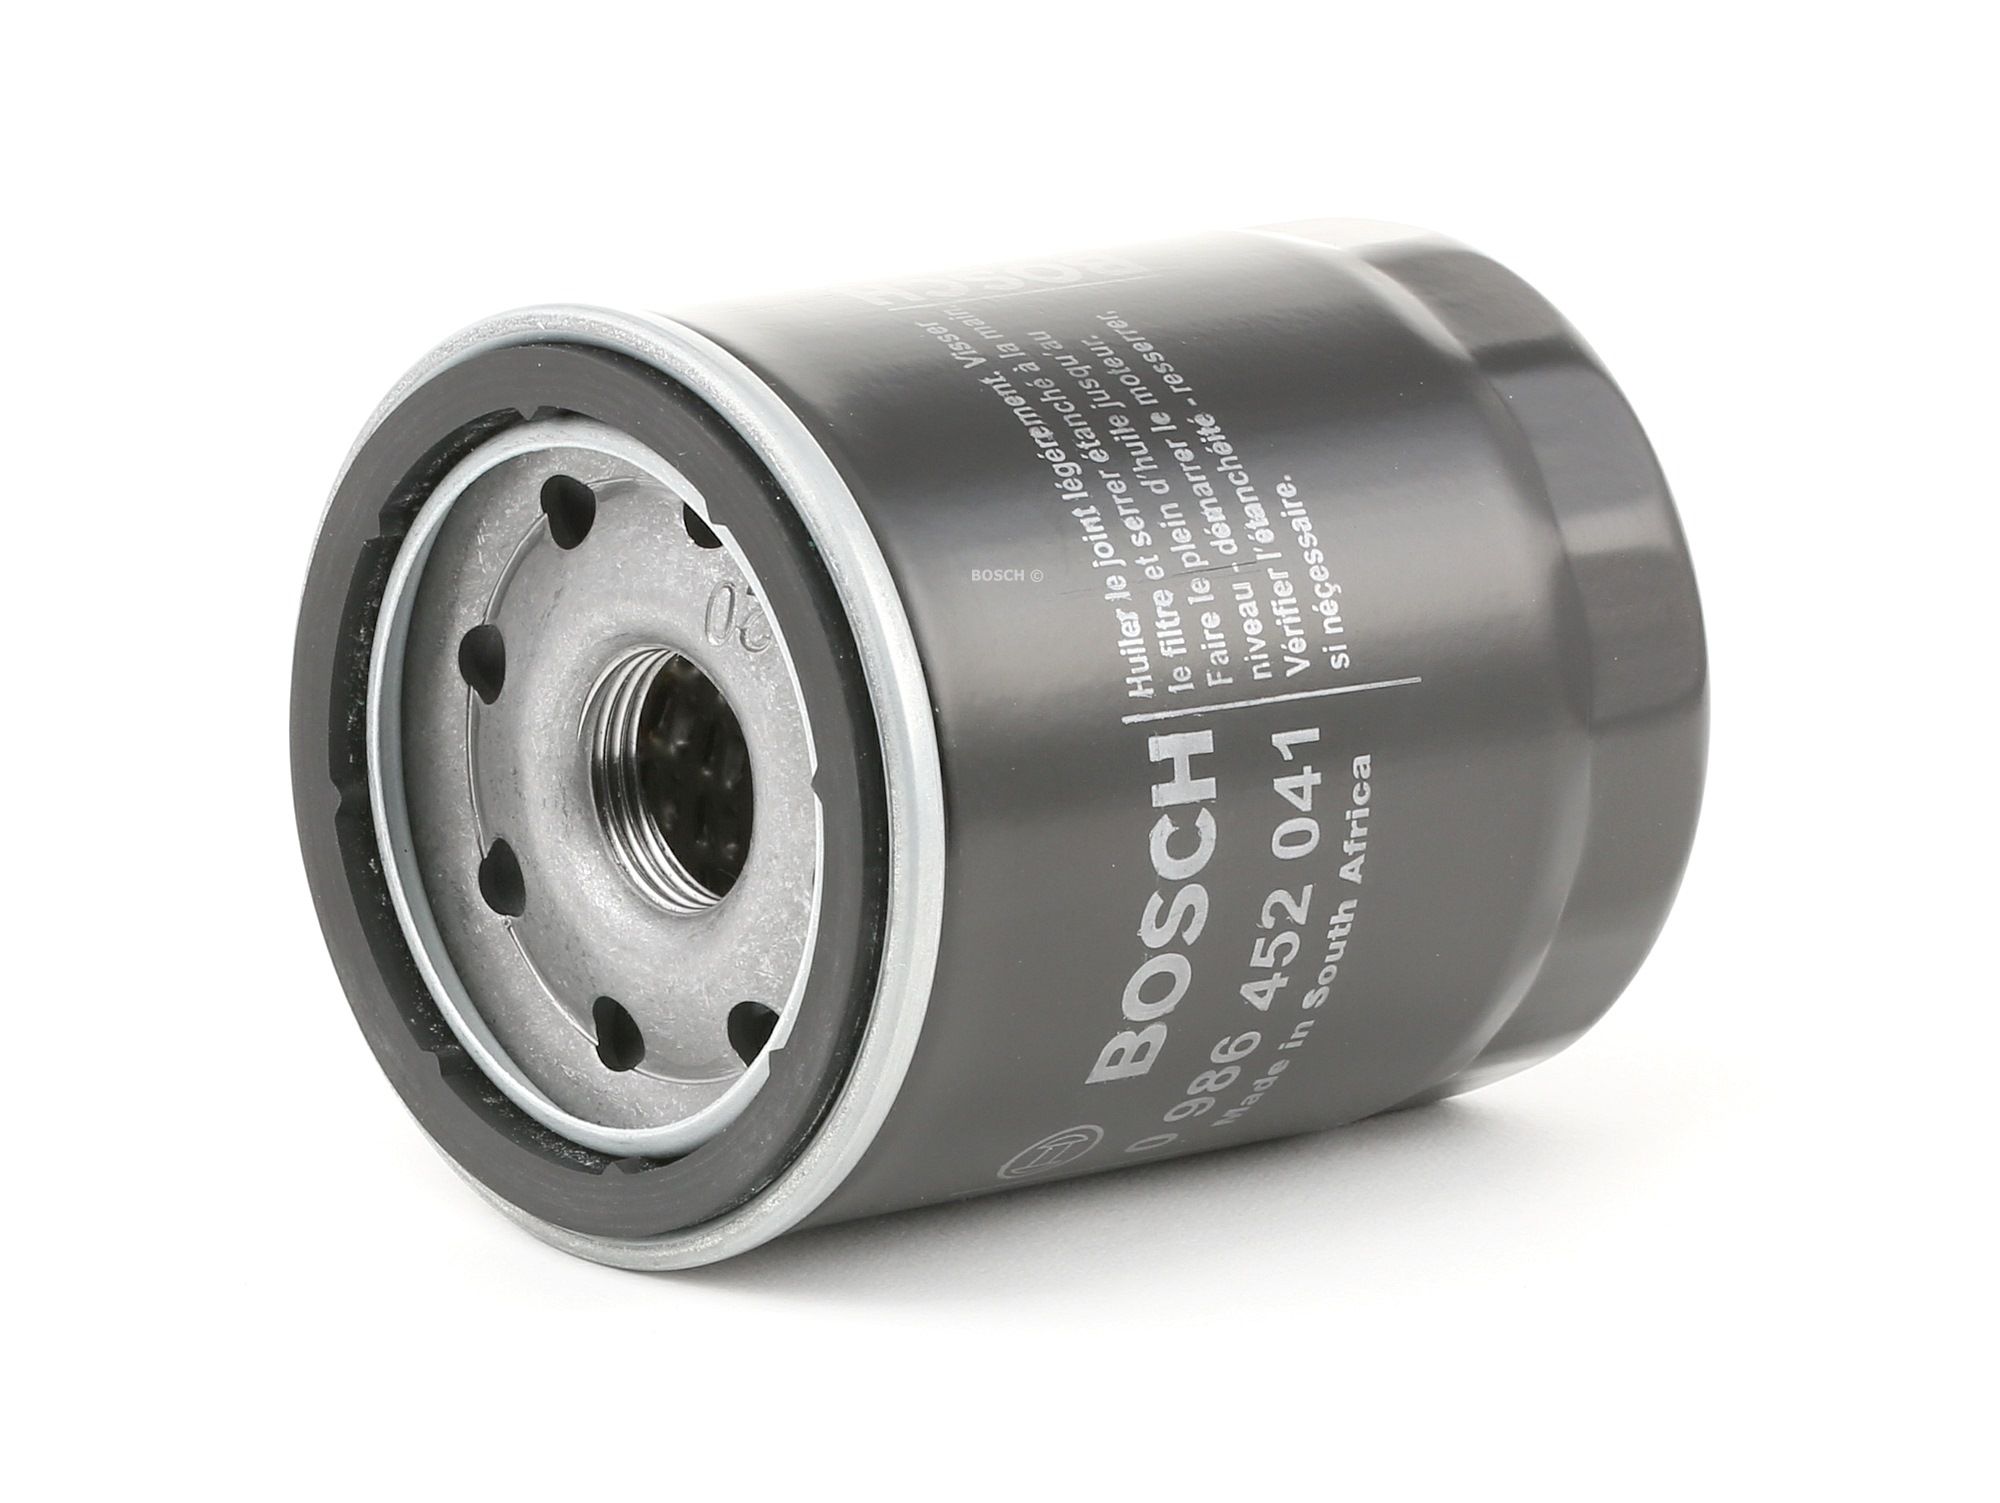 P2041 BOSCH Spin-on Filter Inner Diameter 2: 55mm, Ø: 68mm, Outer diameter 2: 64mm, Ø: 68mm, Height: 87mm Oil Filter 0 986 452 041 cheap